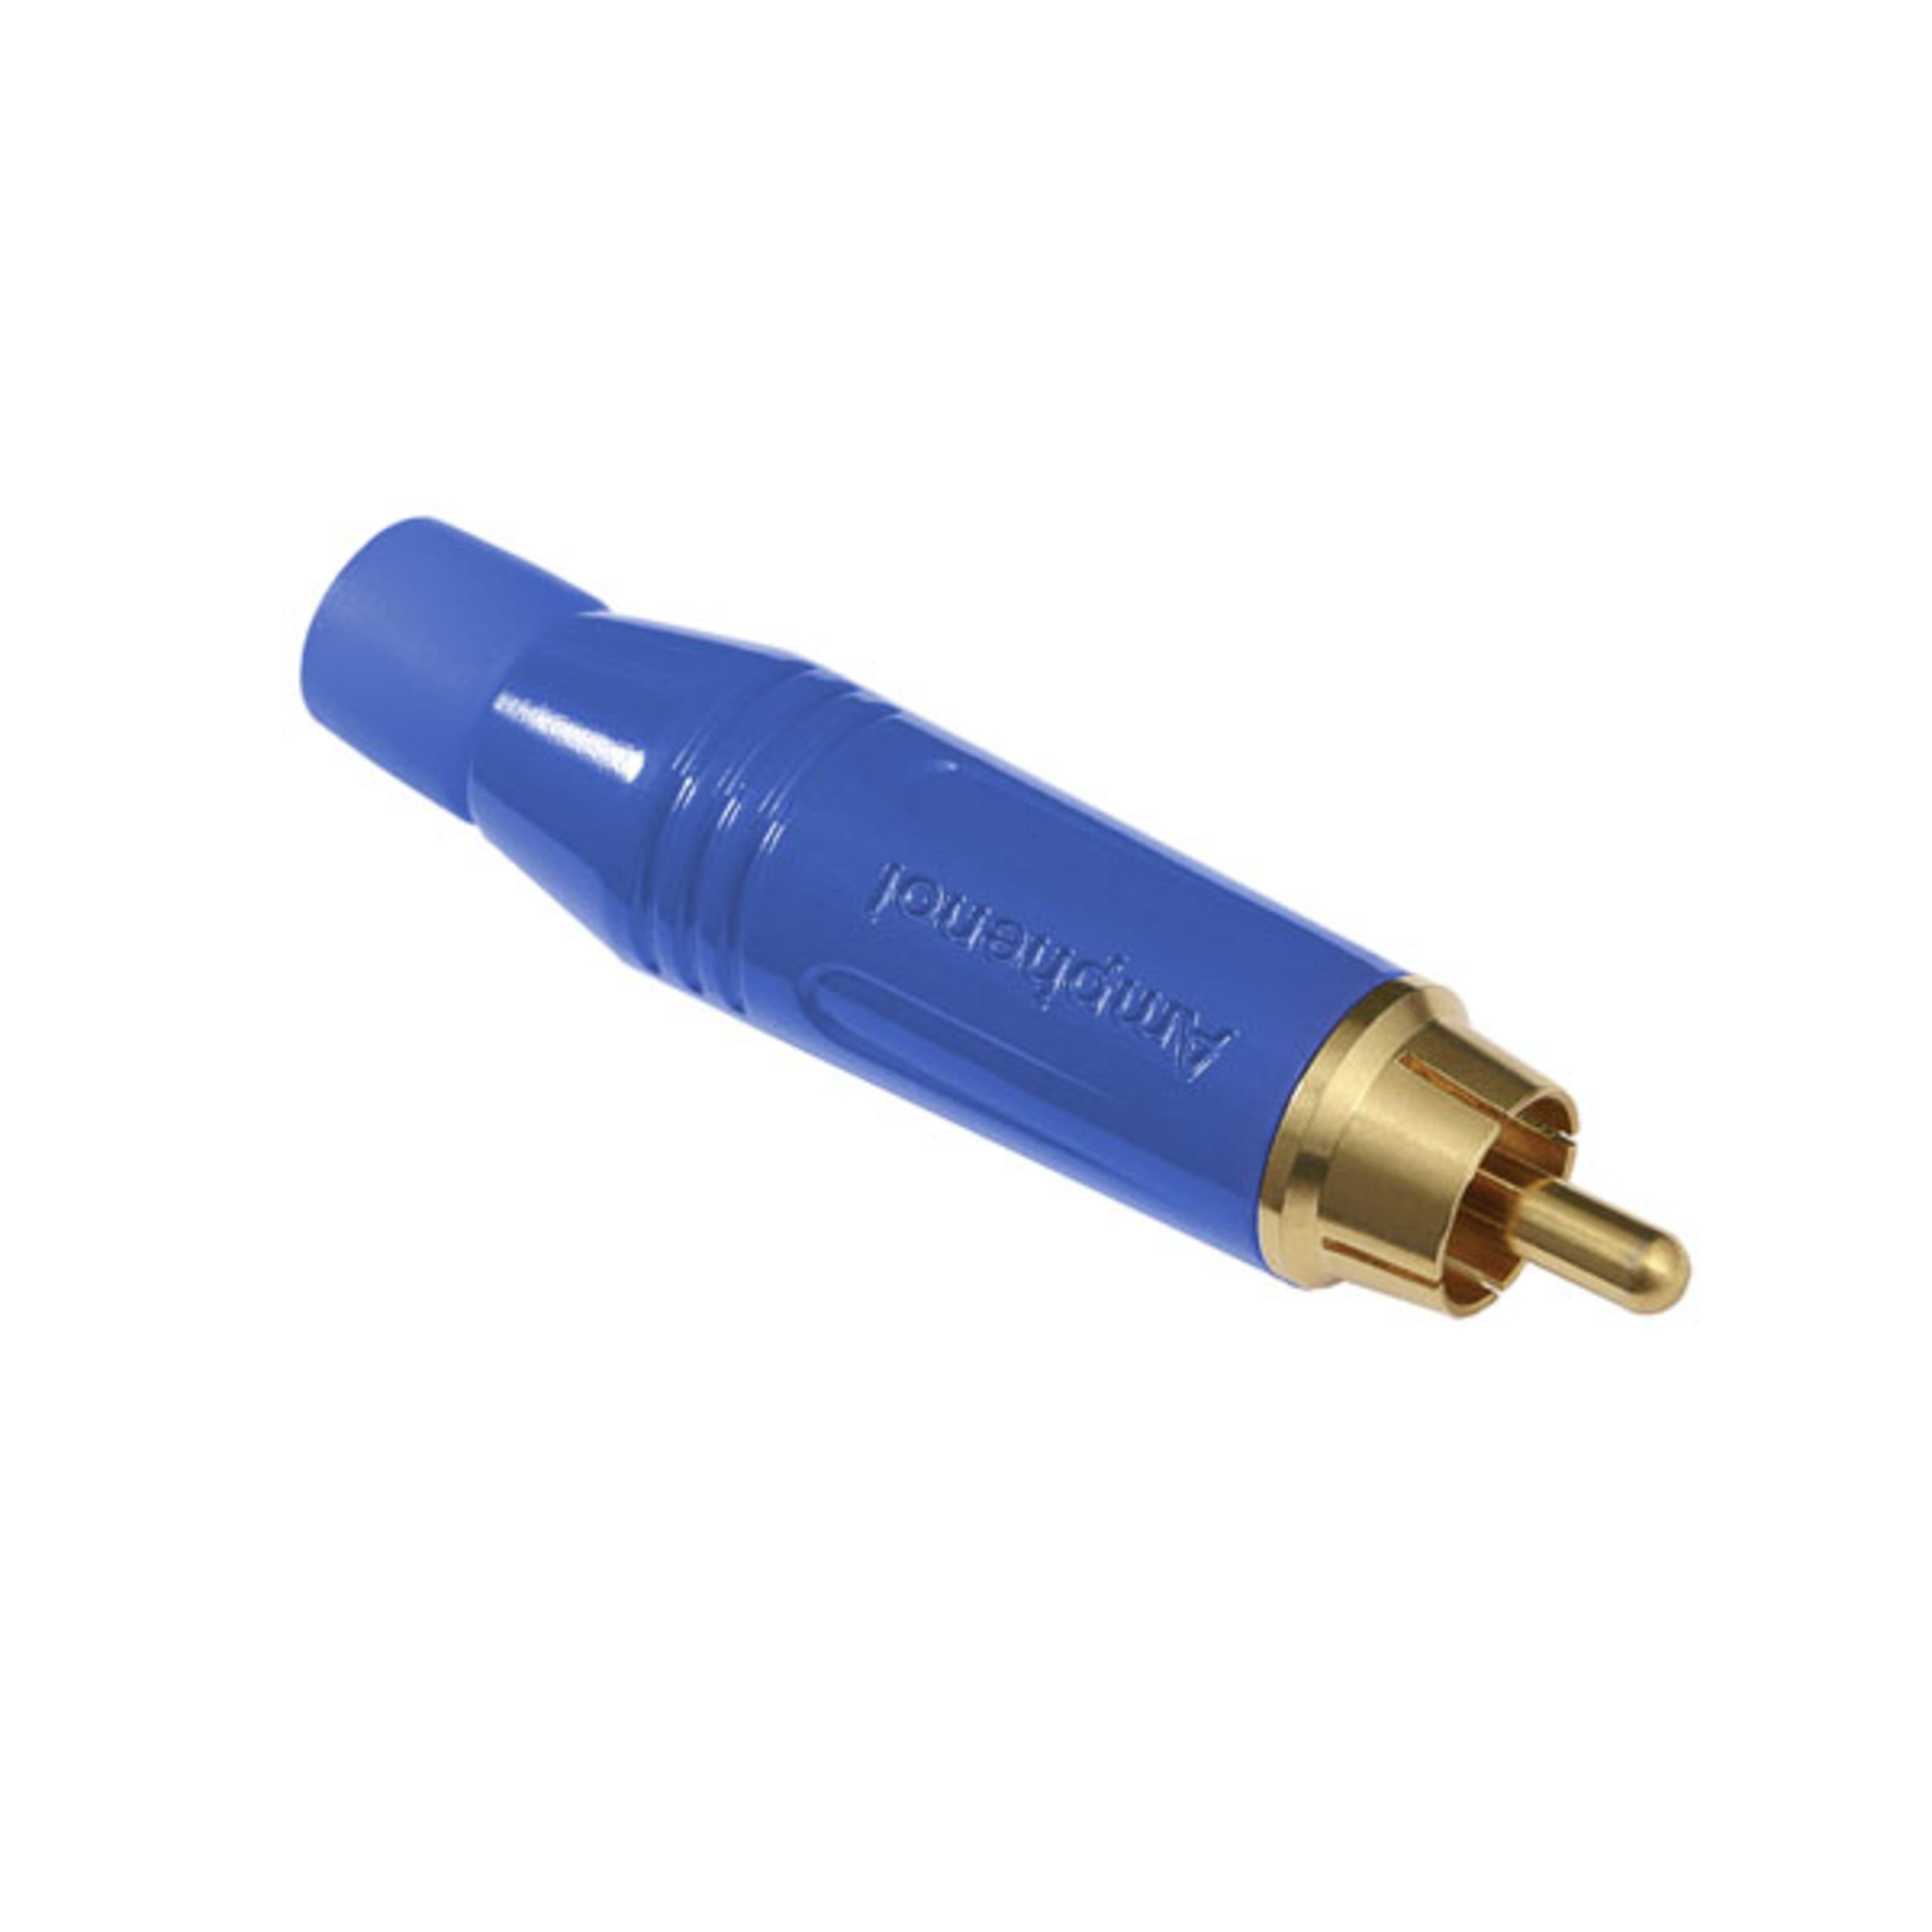 Amphenol Cinch-Stecker, (Stecker & Adapter, Kabel-Stecker), ACPR-BLU Cinchstecker blau - Kabel Stecker